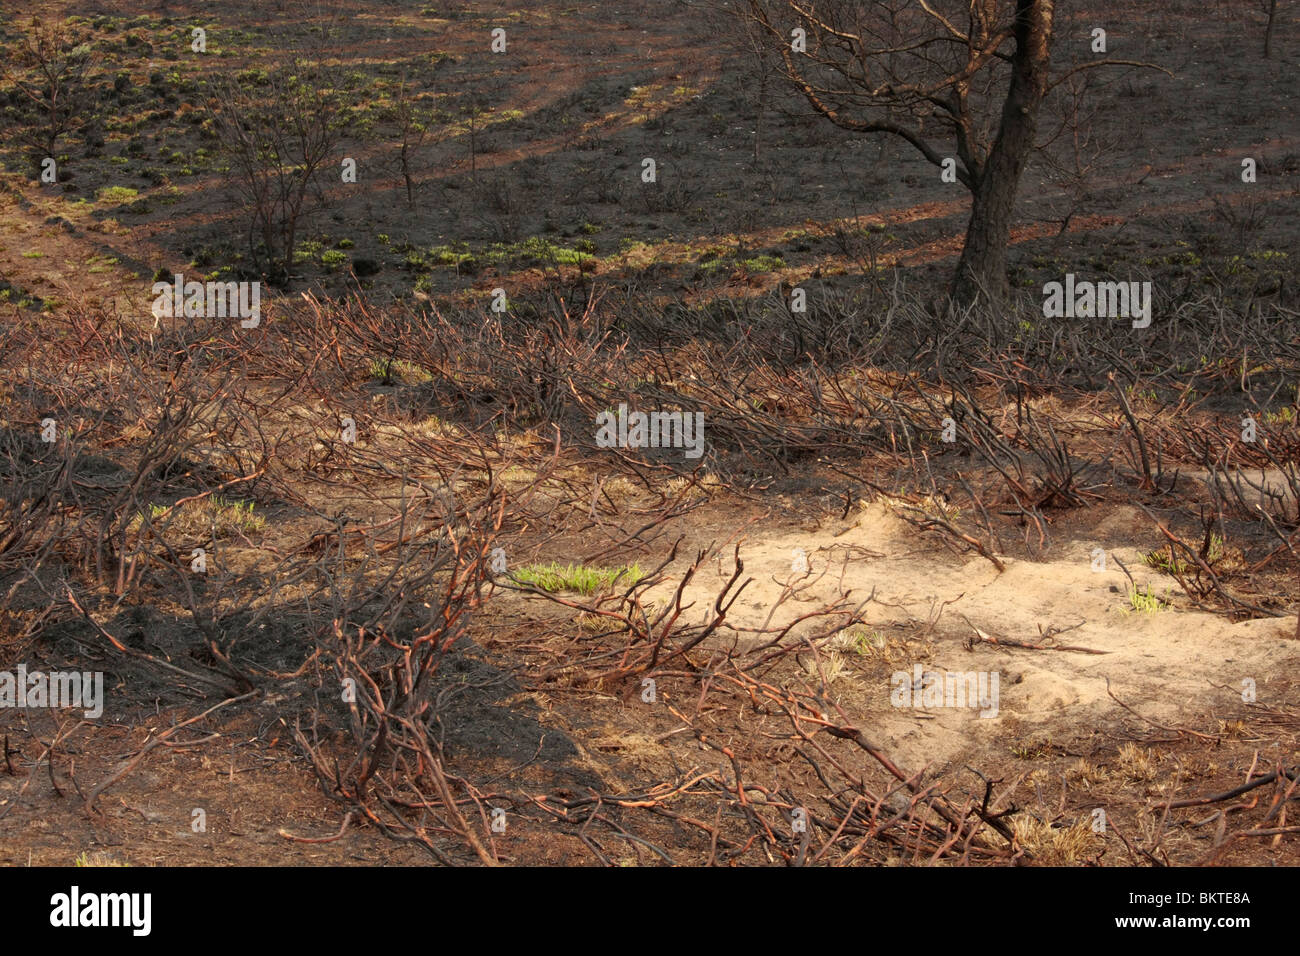 Op 24 april 2009 is een heidegebied (Asselse heide bij Apeldoorn) ter grootte van 15 voetbalvelden door een grote brand verloren gegaan. De brand werd ontdekt door een patrouillevliegtuig. Na anderhalf uur blussen door lokale brandweerkorpsen is het sein Stock Photo